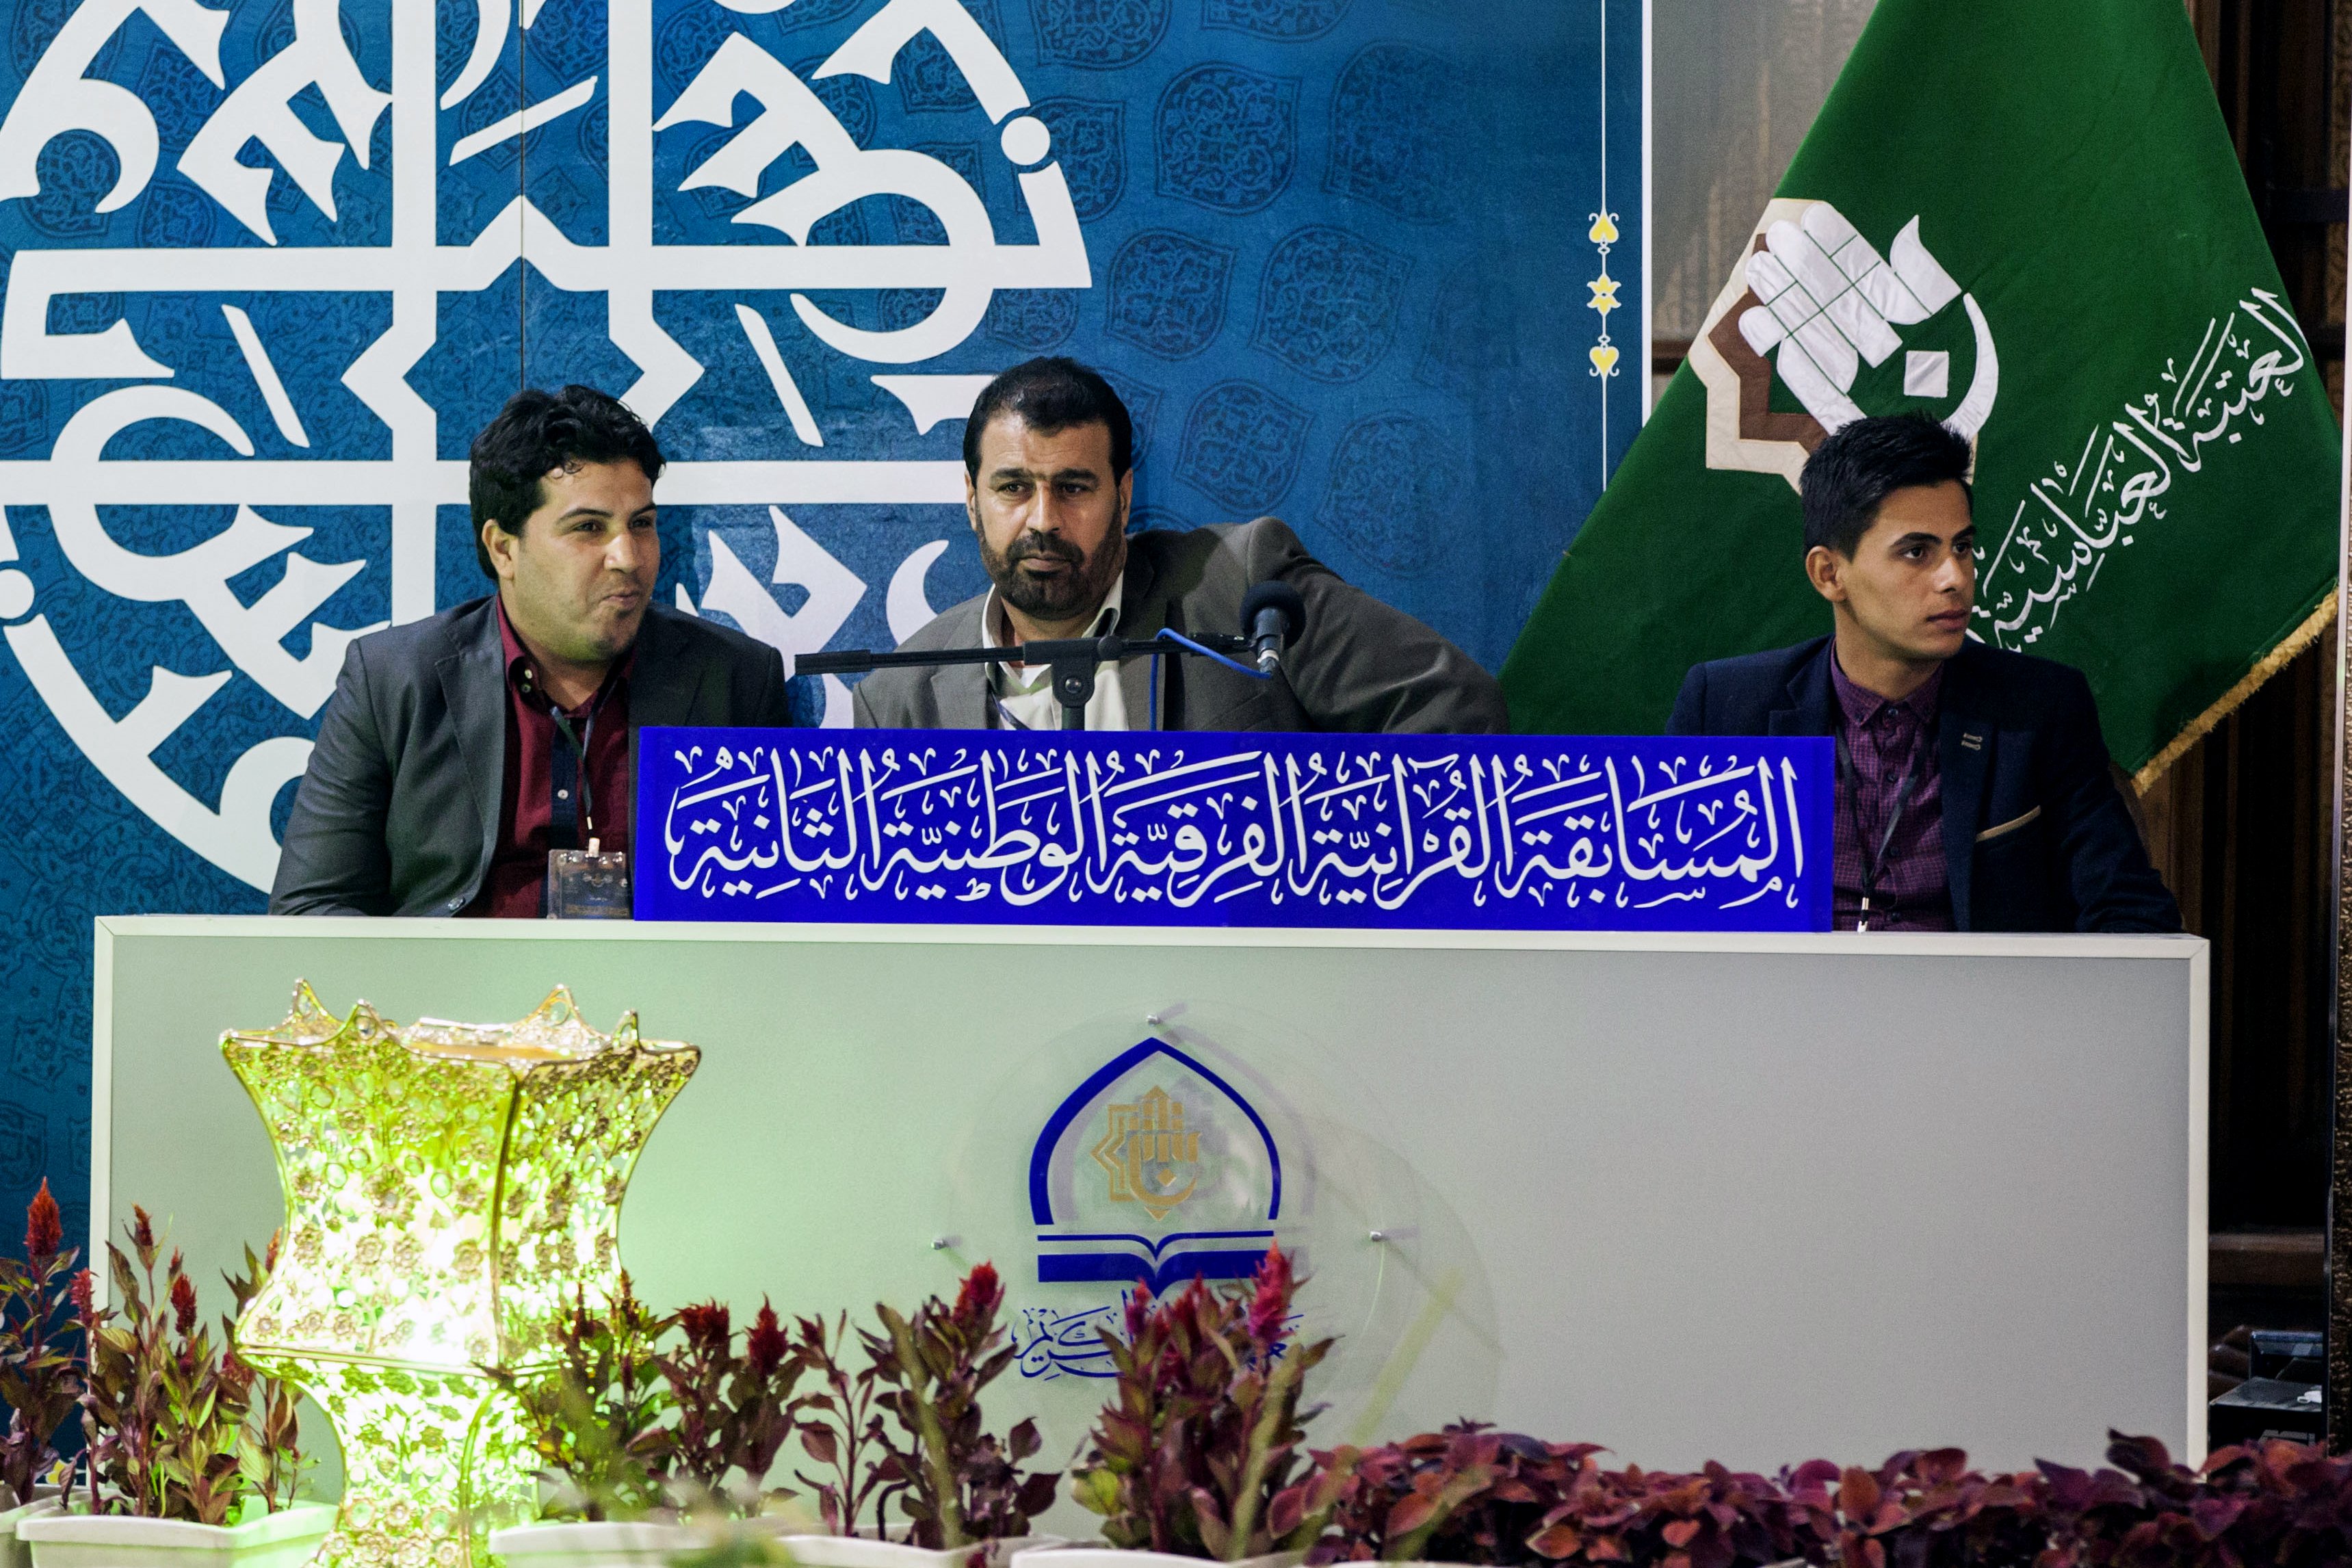 فريق ميسان يفوز على فريق ذي قار في انطلاق المسابقة القرآنية الفرقية الوطنية الثانية..